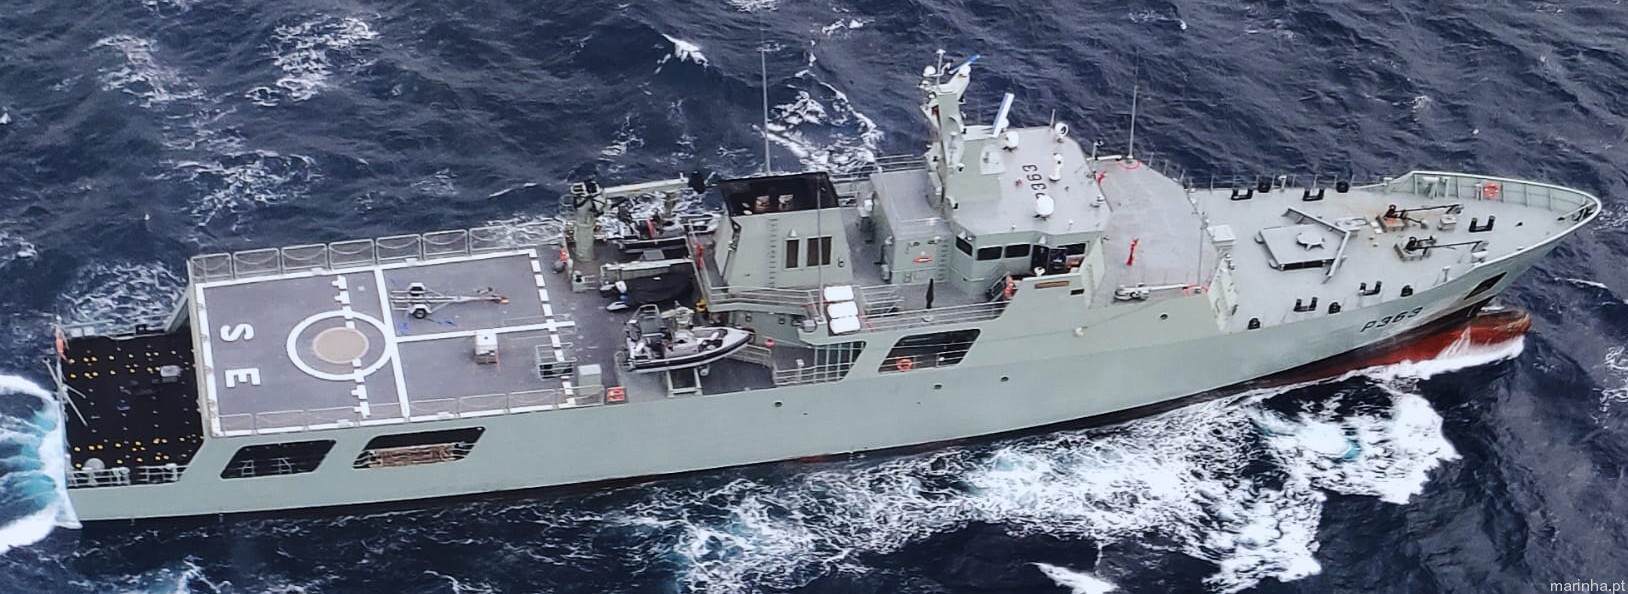 p-363 nrp setubal viana do castelo class offshore patrol vessel opv portuguese navy marinha 09